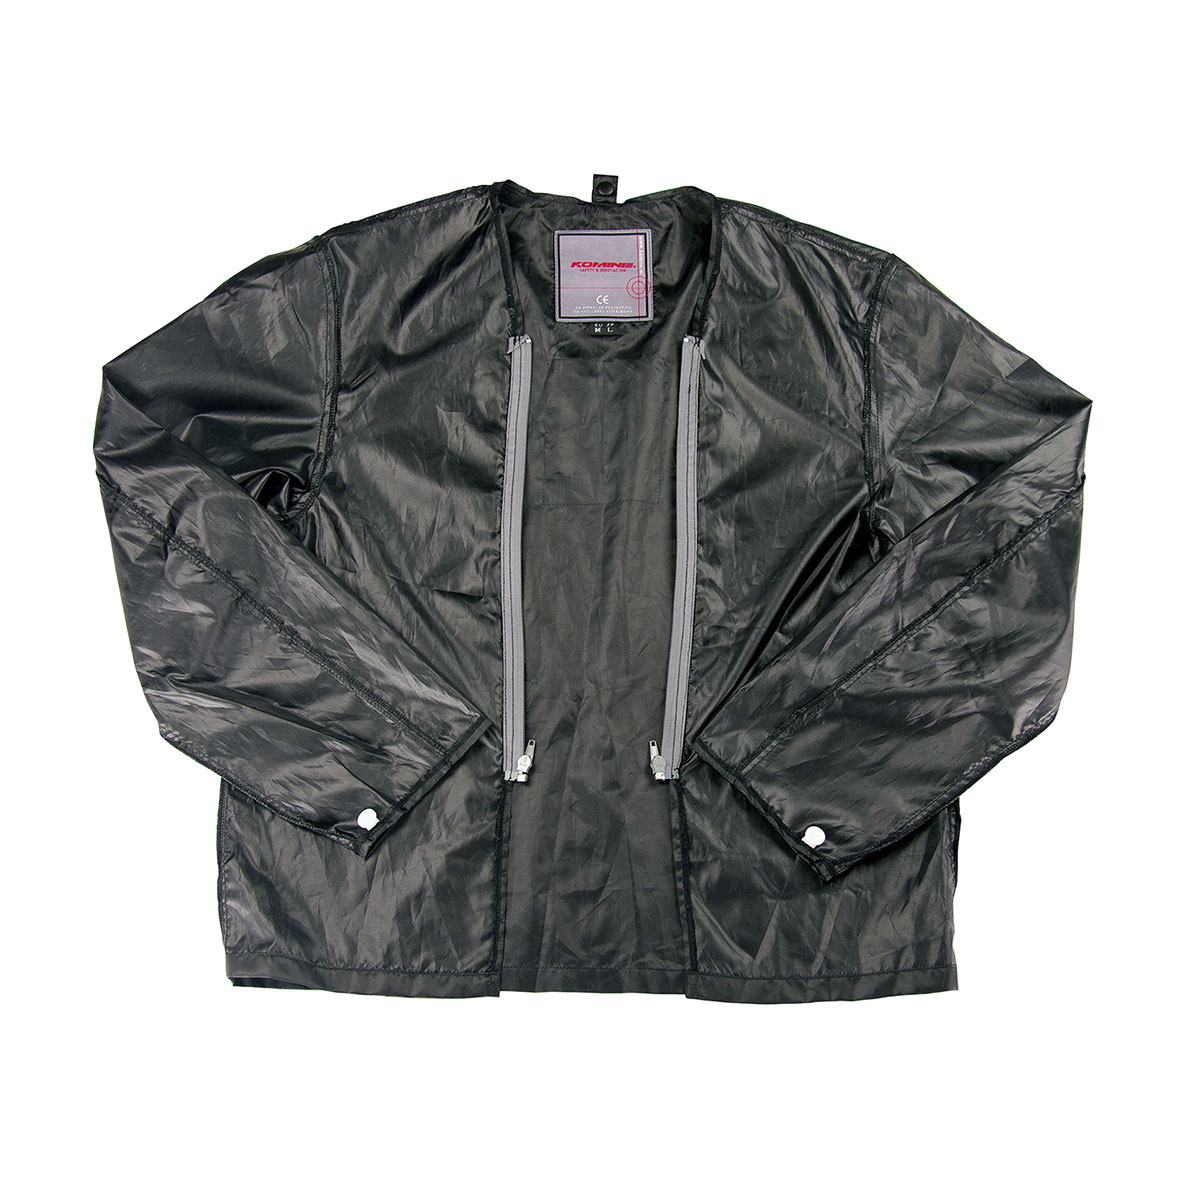  コミネ KOMINE バイク用 ジャケット Jacket JK-051 ウインドプルーフライニングジャケット ブラック 黒 4XLサイズ 07-051/BK/4XL